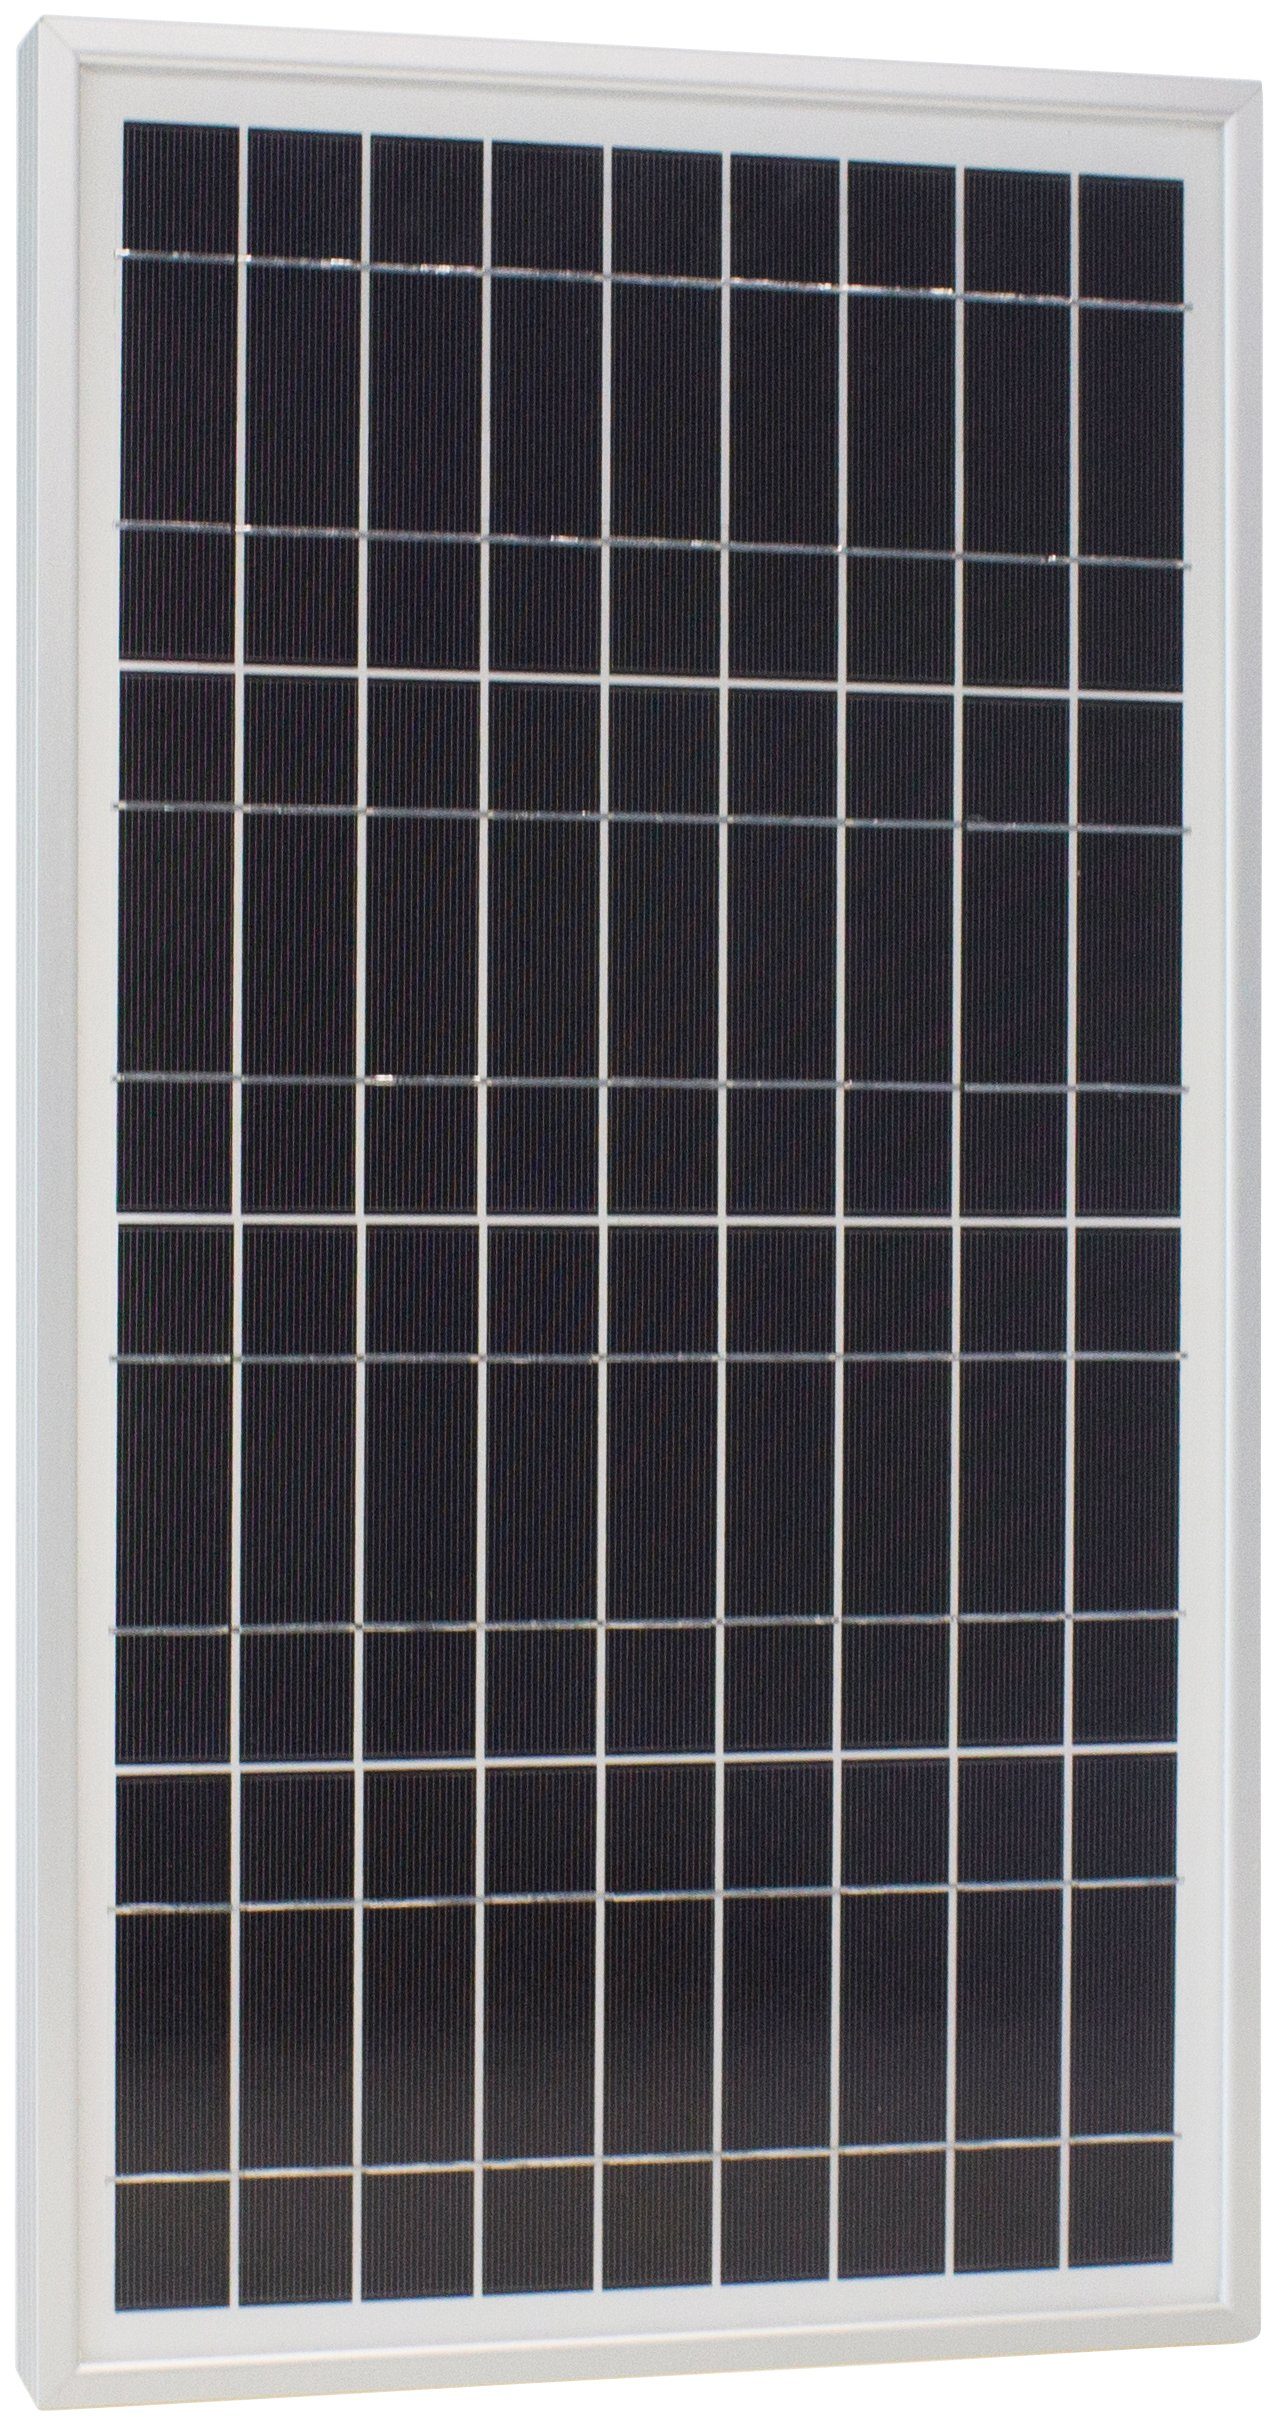 Schutz S, 20 IP65 VDC, Phaesun Plus Solarmodul W, Sun 12 20